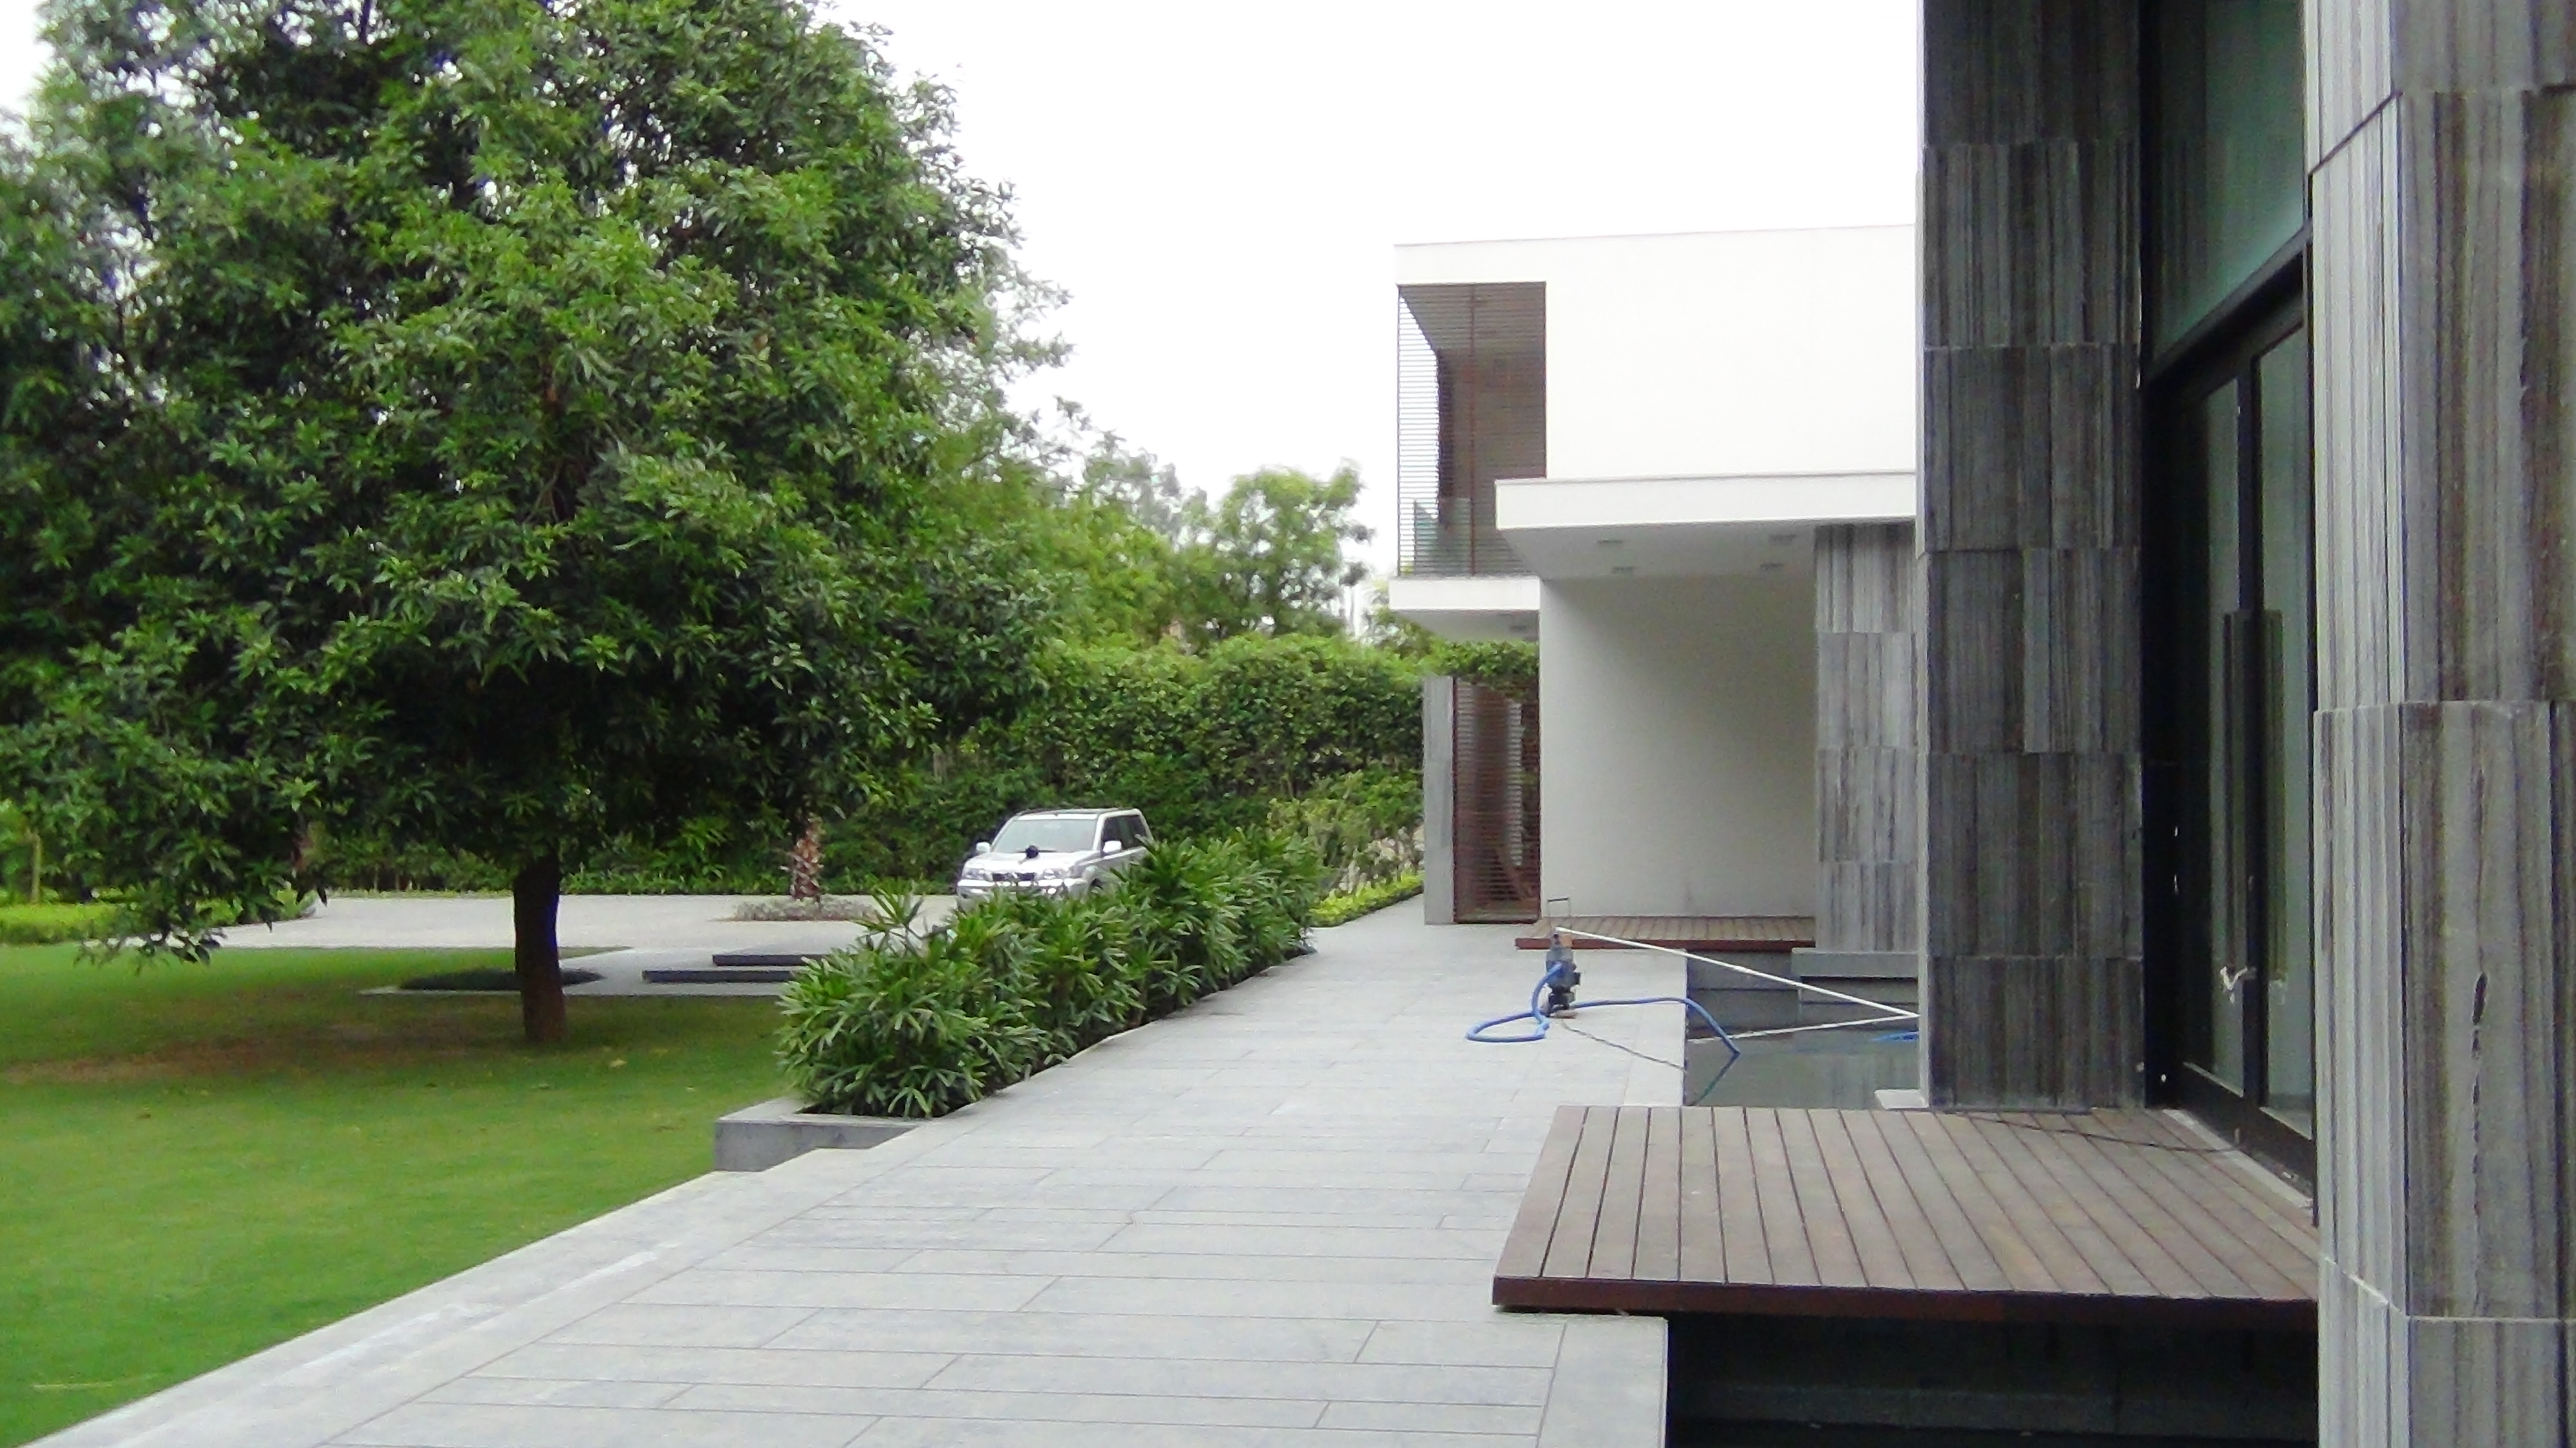 2 acre Farm (Readymade) in DLF Chattarpur | Regatta Real Estates